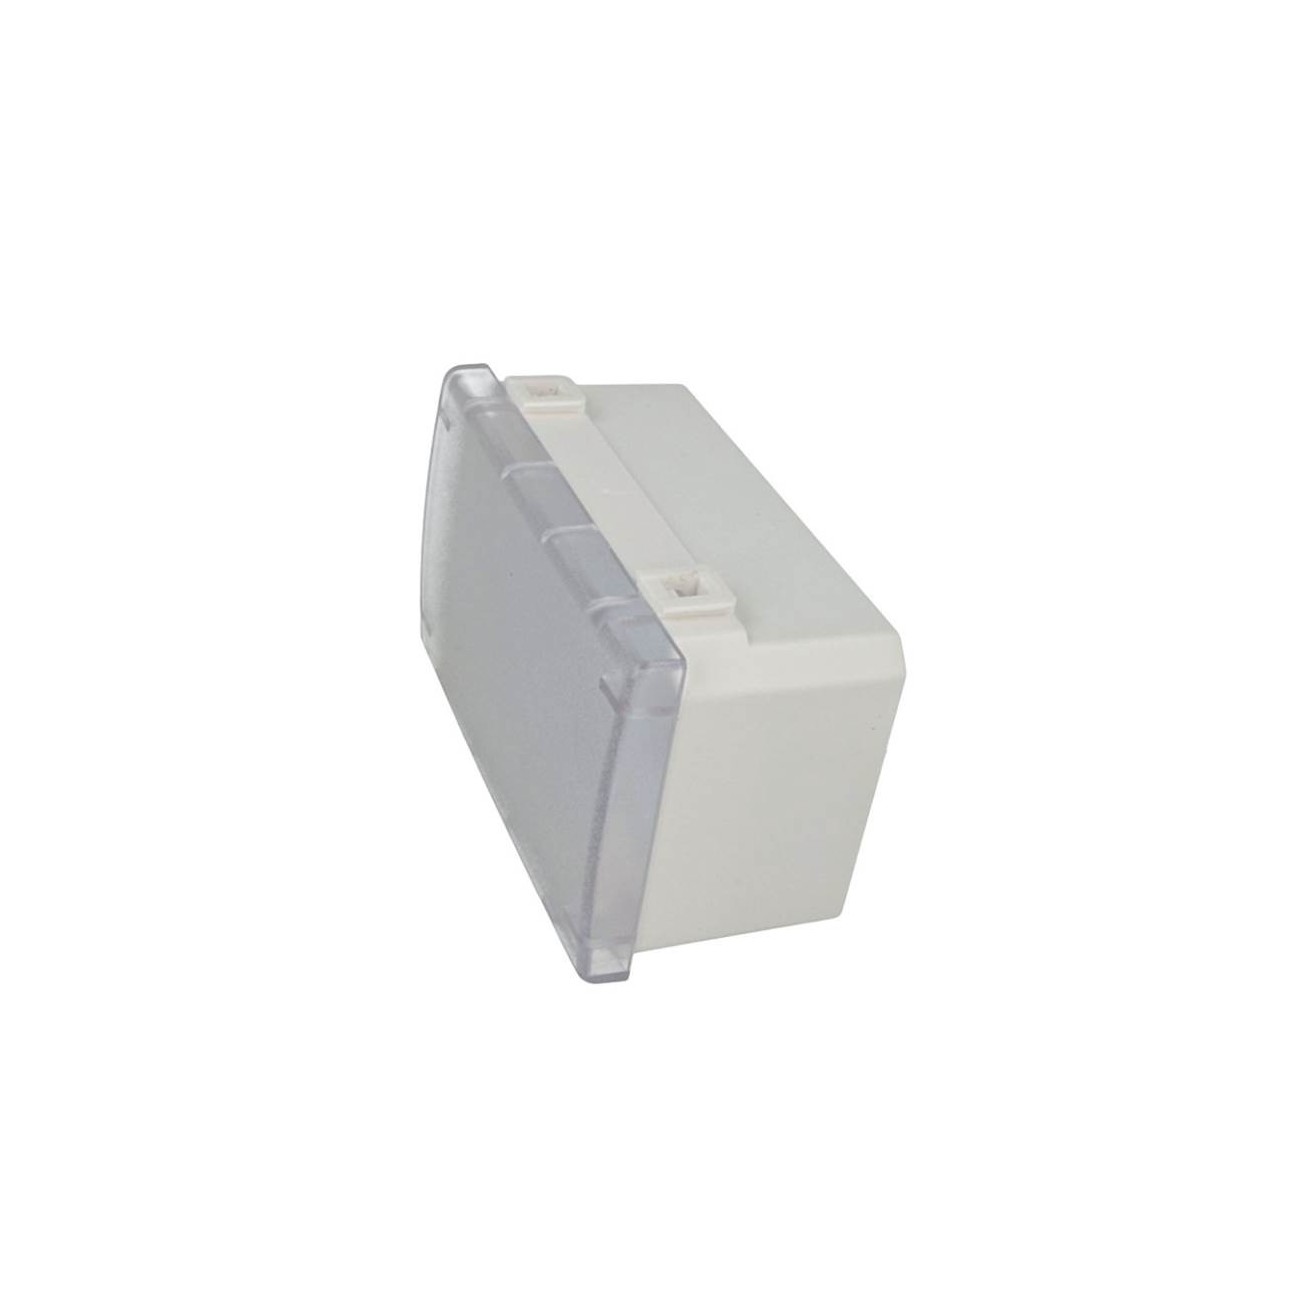 Lampada emergenza compatibile con Bticino Matix per scatola 503 luce led 3w  3 moduli da incasso a parete